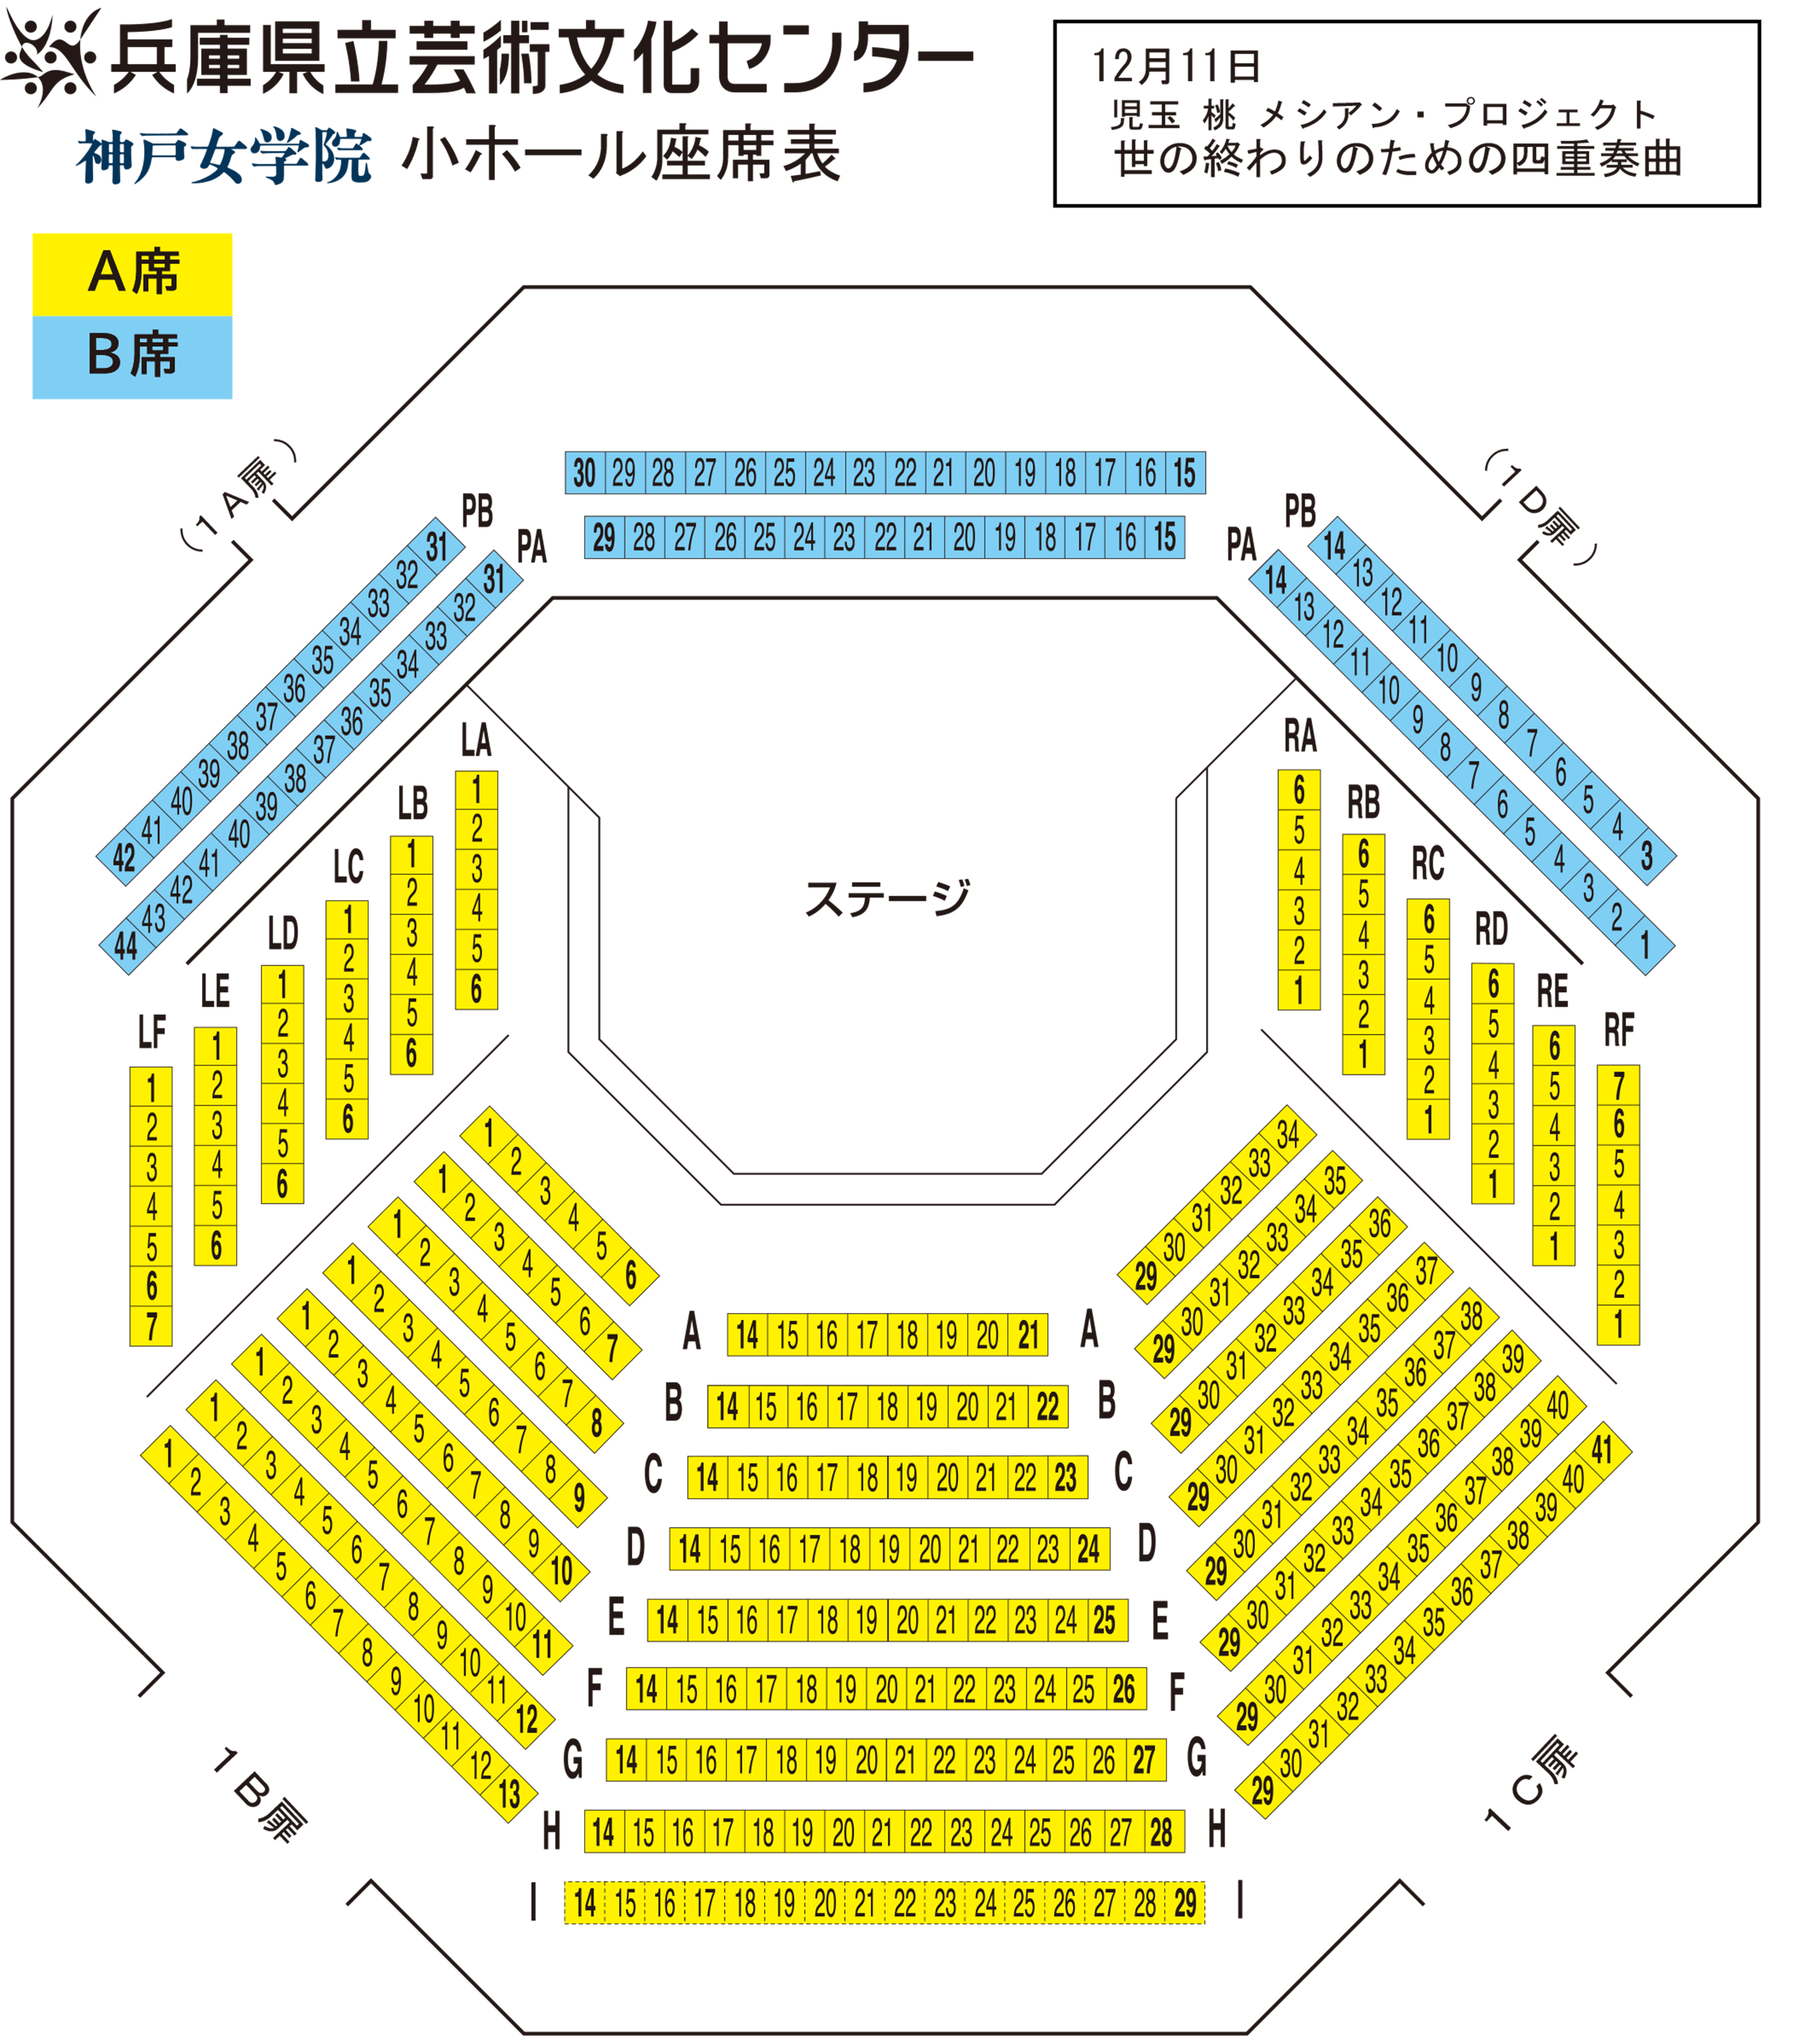 神戸女学院小ホール座席表